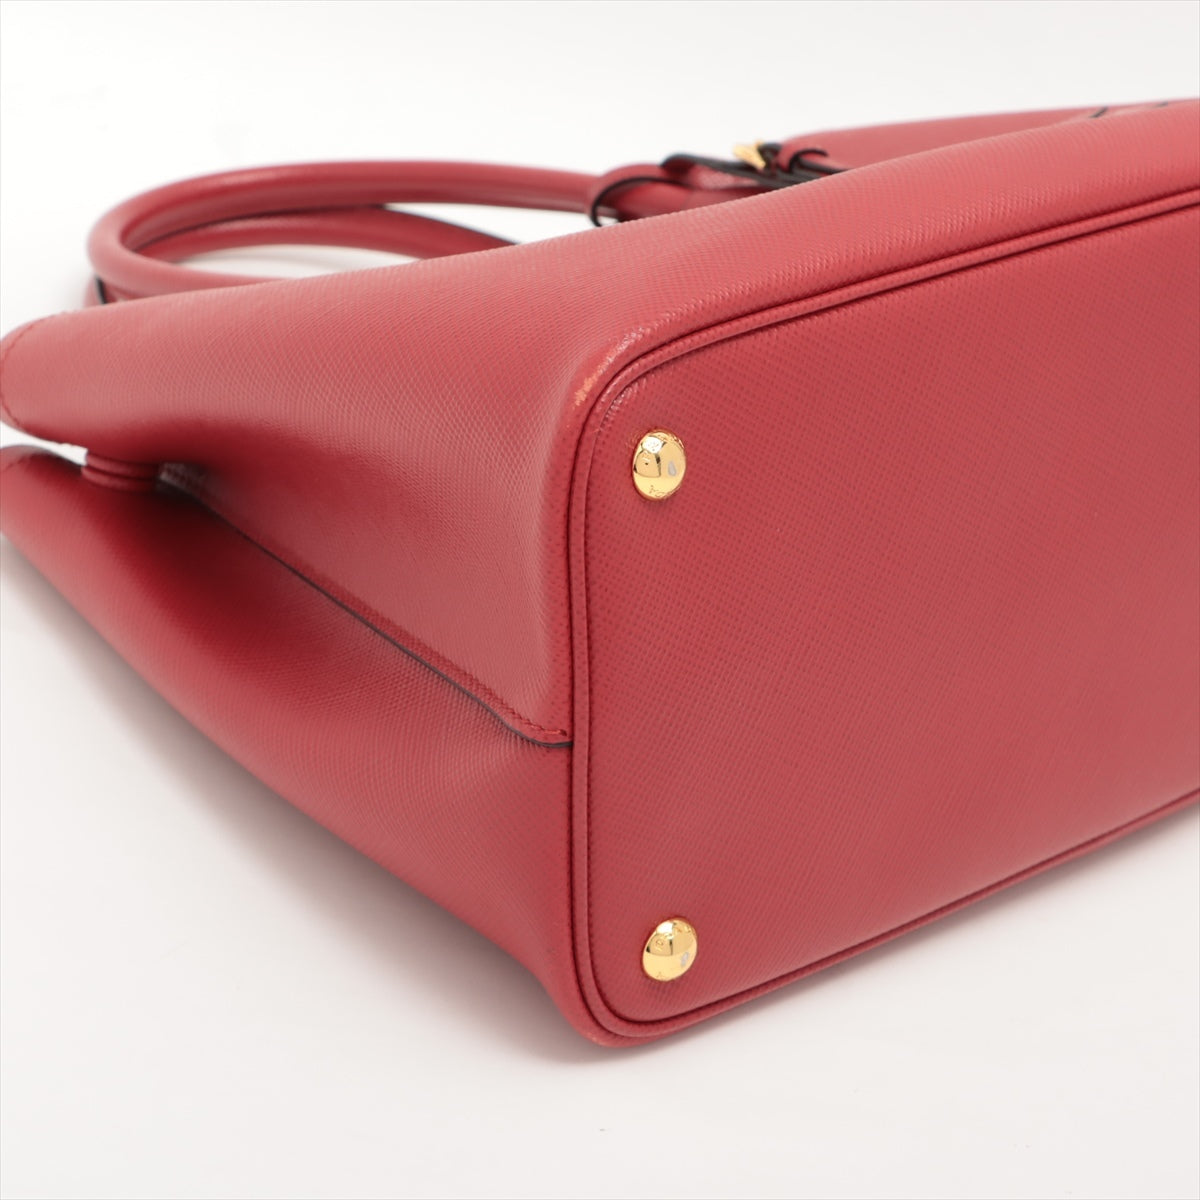 Prada Saffiano 2way handbag Red